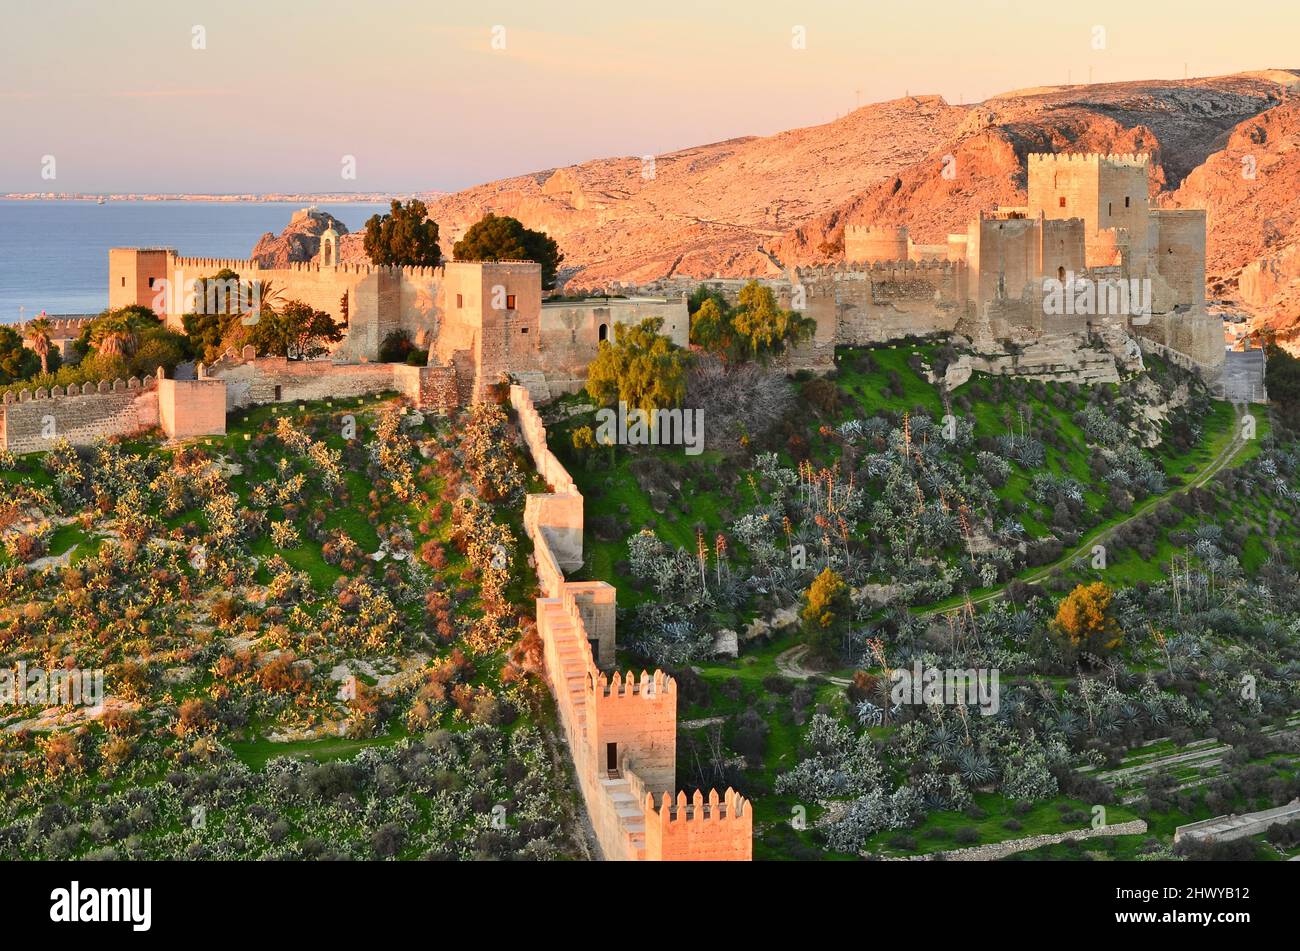 Alcazaba de Almería Vista matutina, castillo medieval morisco fortificado situado en la costa mediterránea en el árido paisaje del sur de Almería. Foto de stock